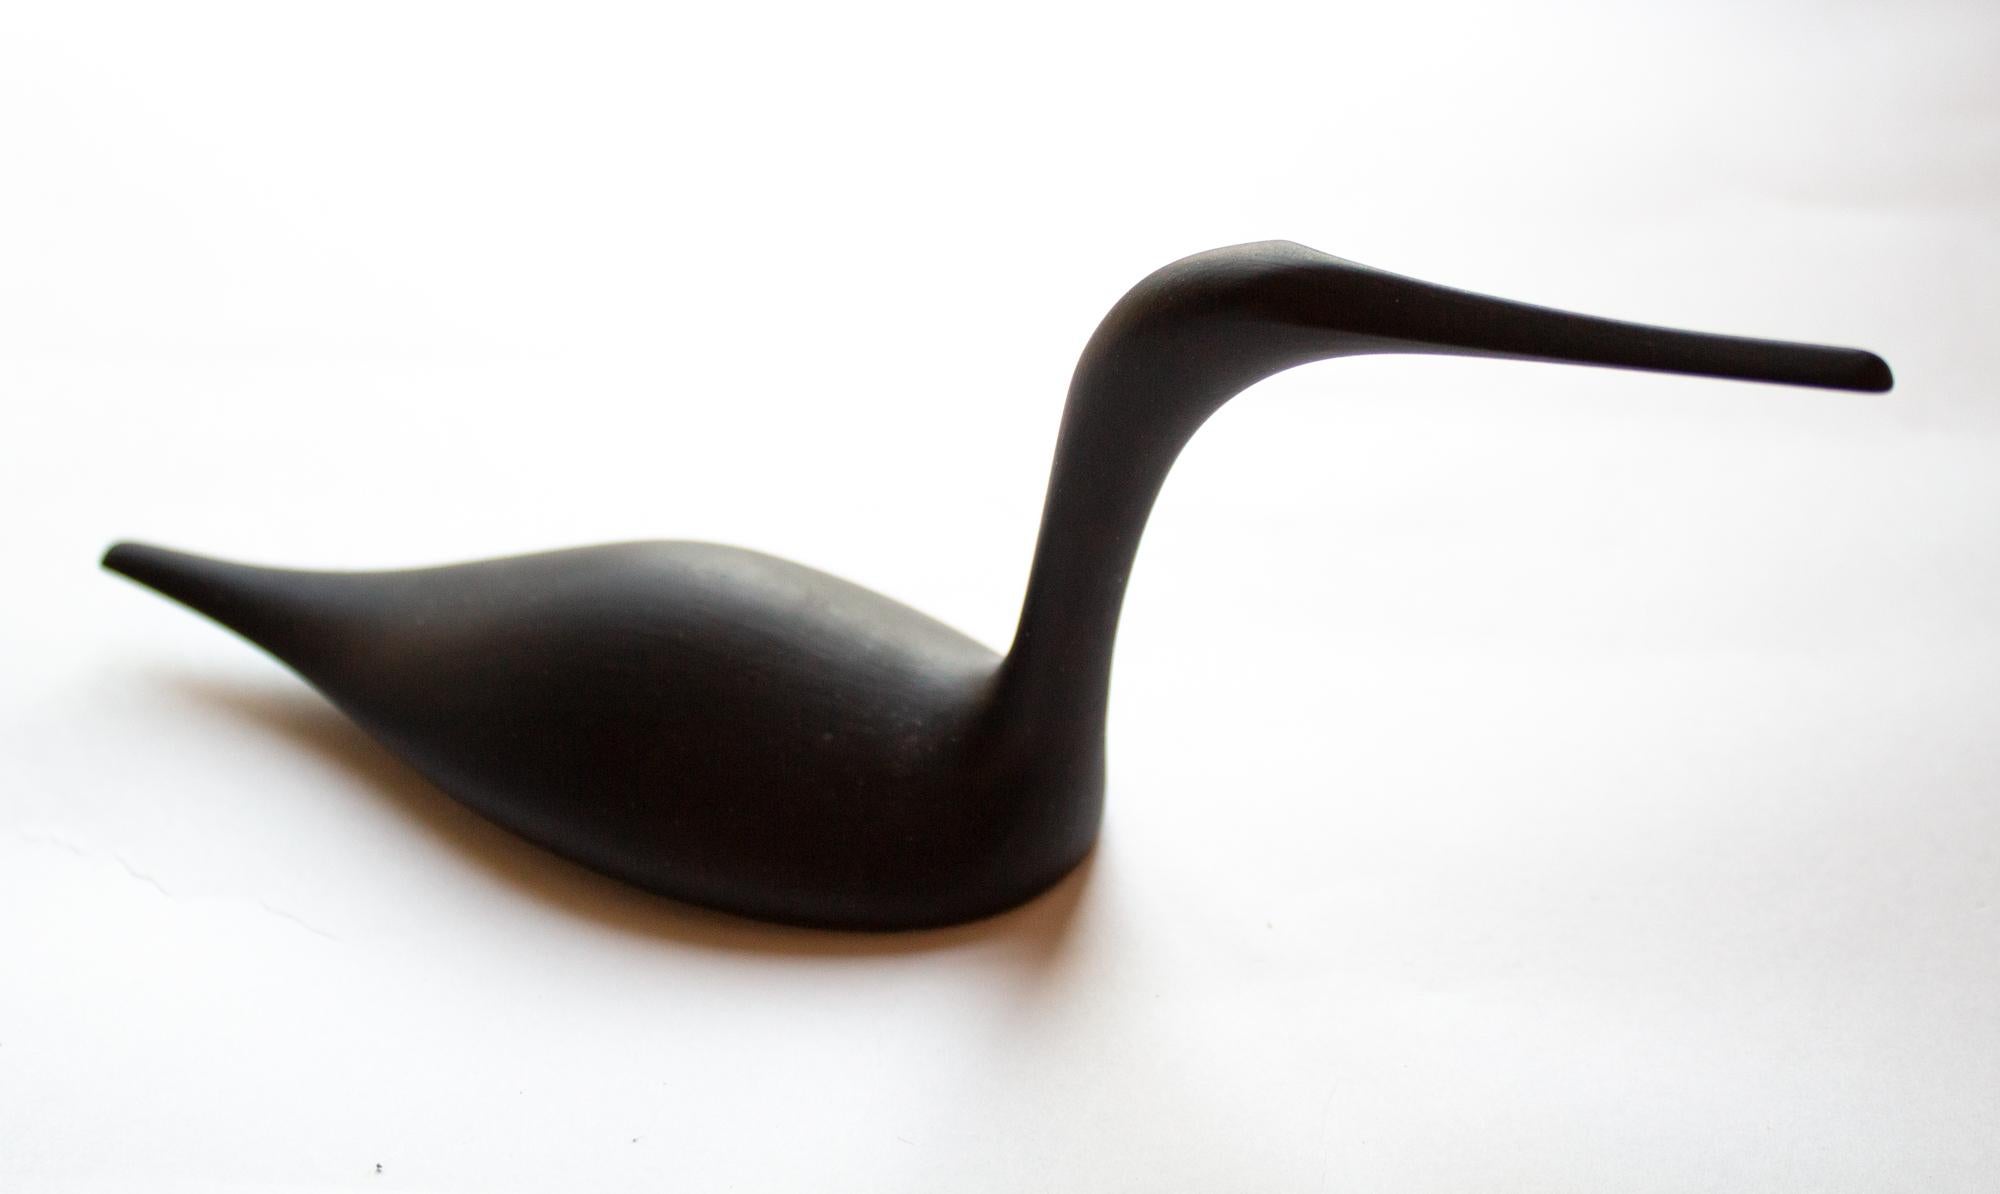 Elegant porcelain black bird figure with matte black glaze, 1970s.
Printed 